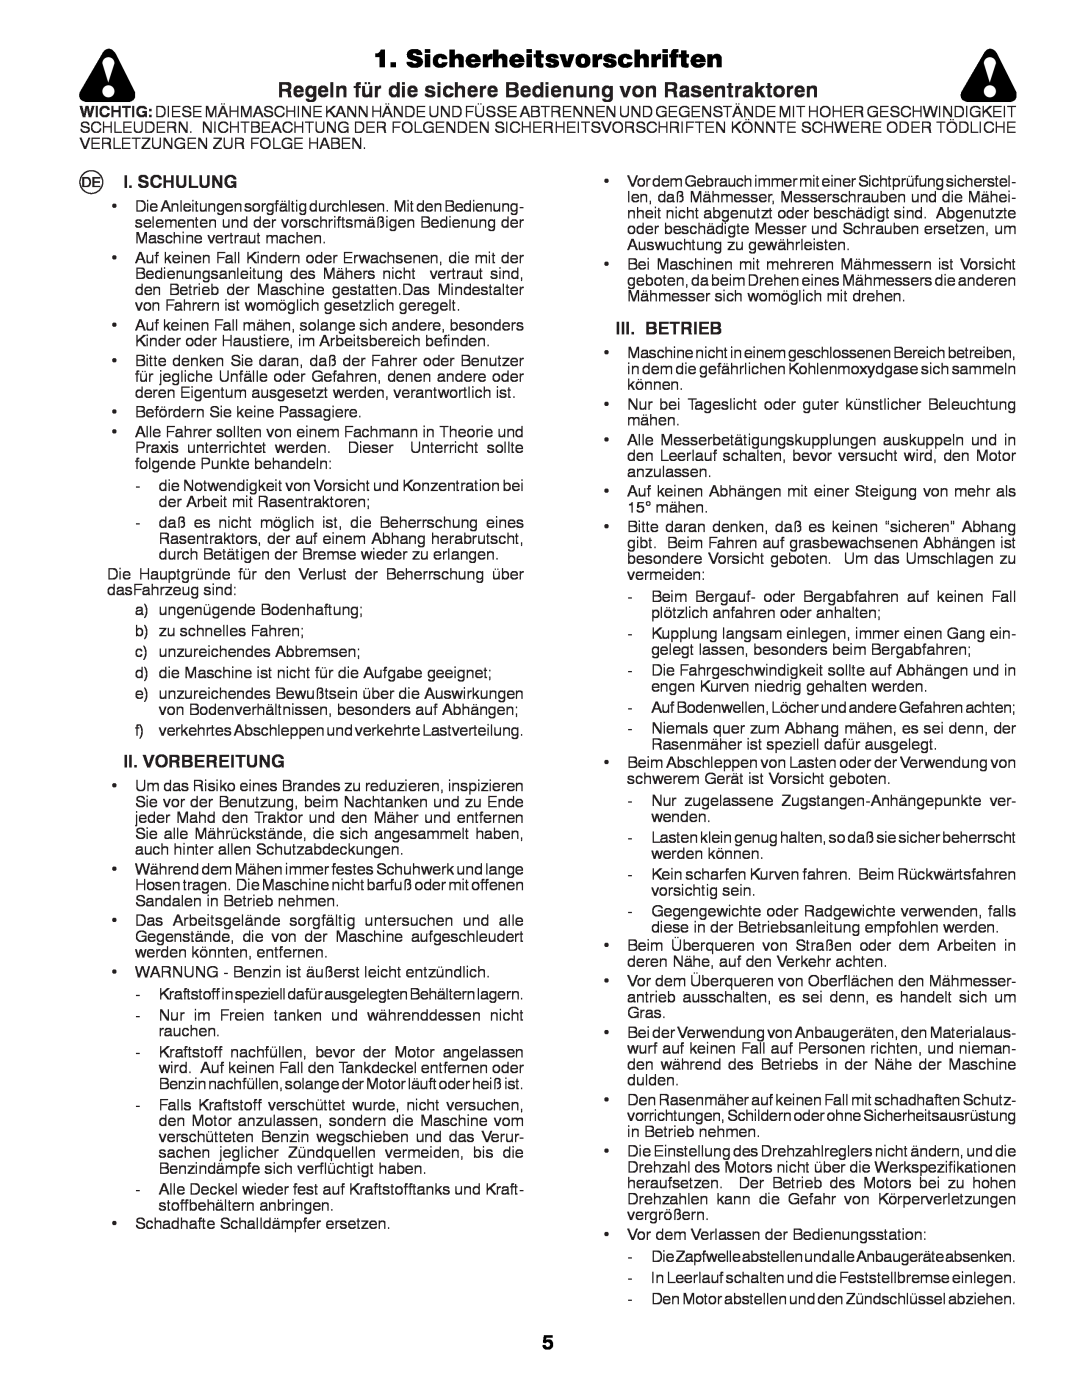 Partner Tech P11577 Sicherheitsvorschriften, Regeln für die sichere Bedienung von Rasentraktoren, I. Schulung 